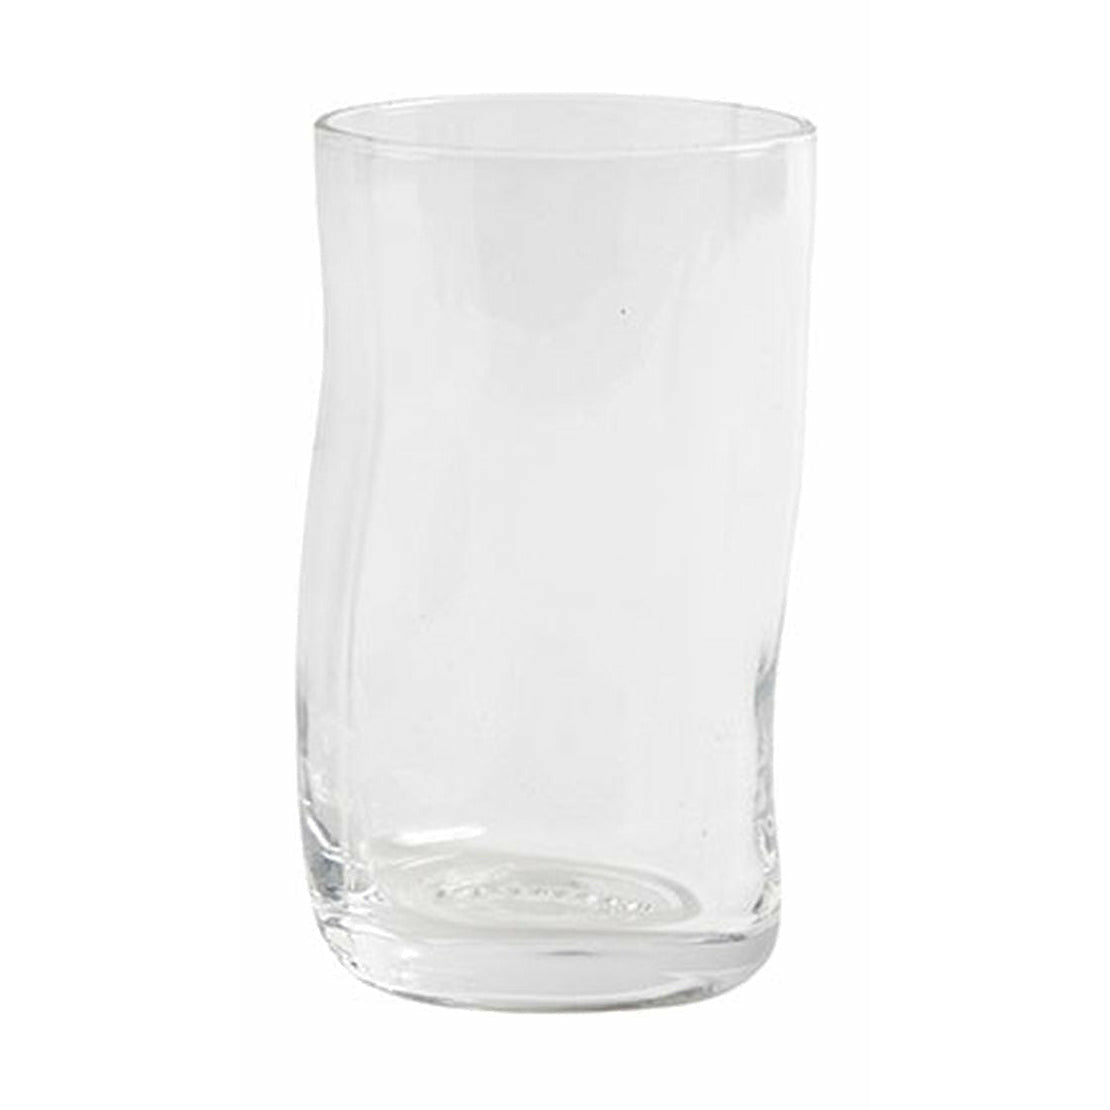 Muubs Furo Glass øx H 7,5x13 4 Pcs., Clear